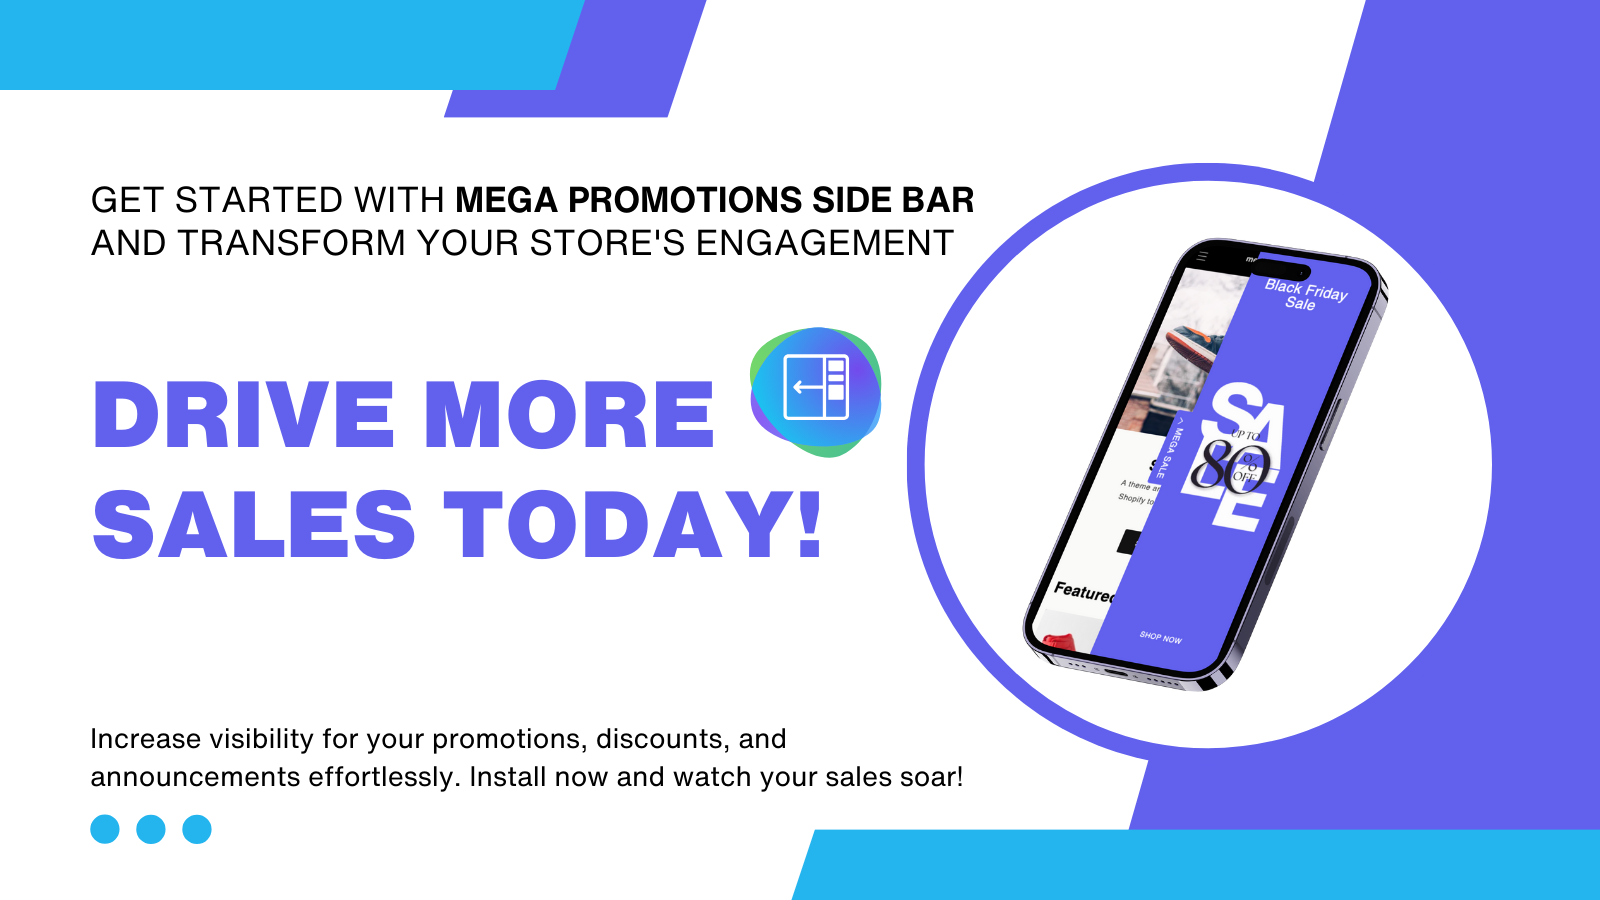 Mega Promotions Side Bar - Impulsione mais vendas para sua loja